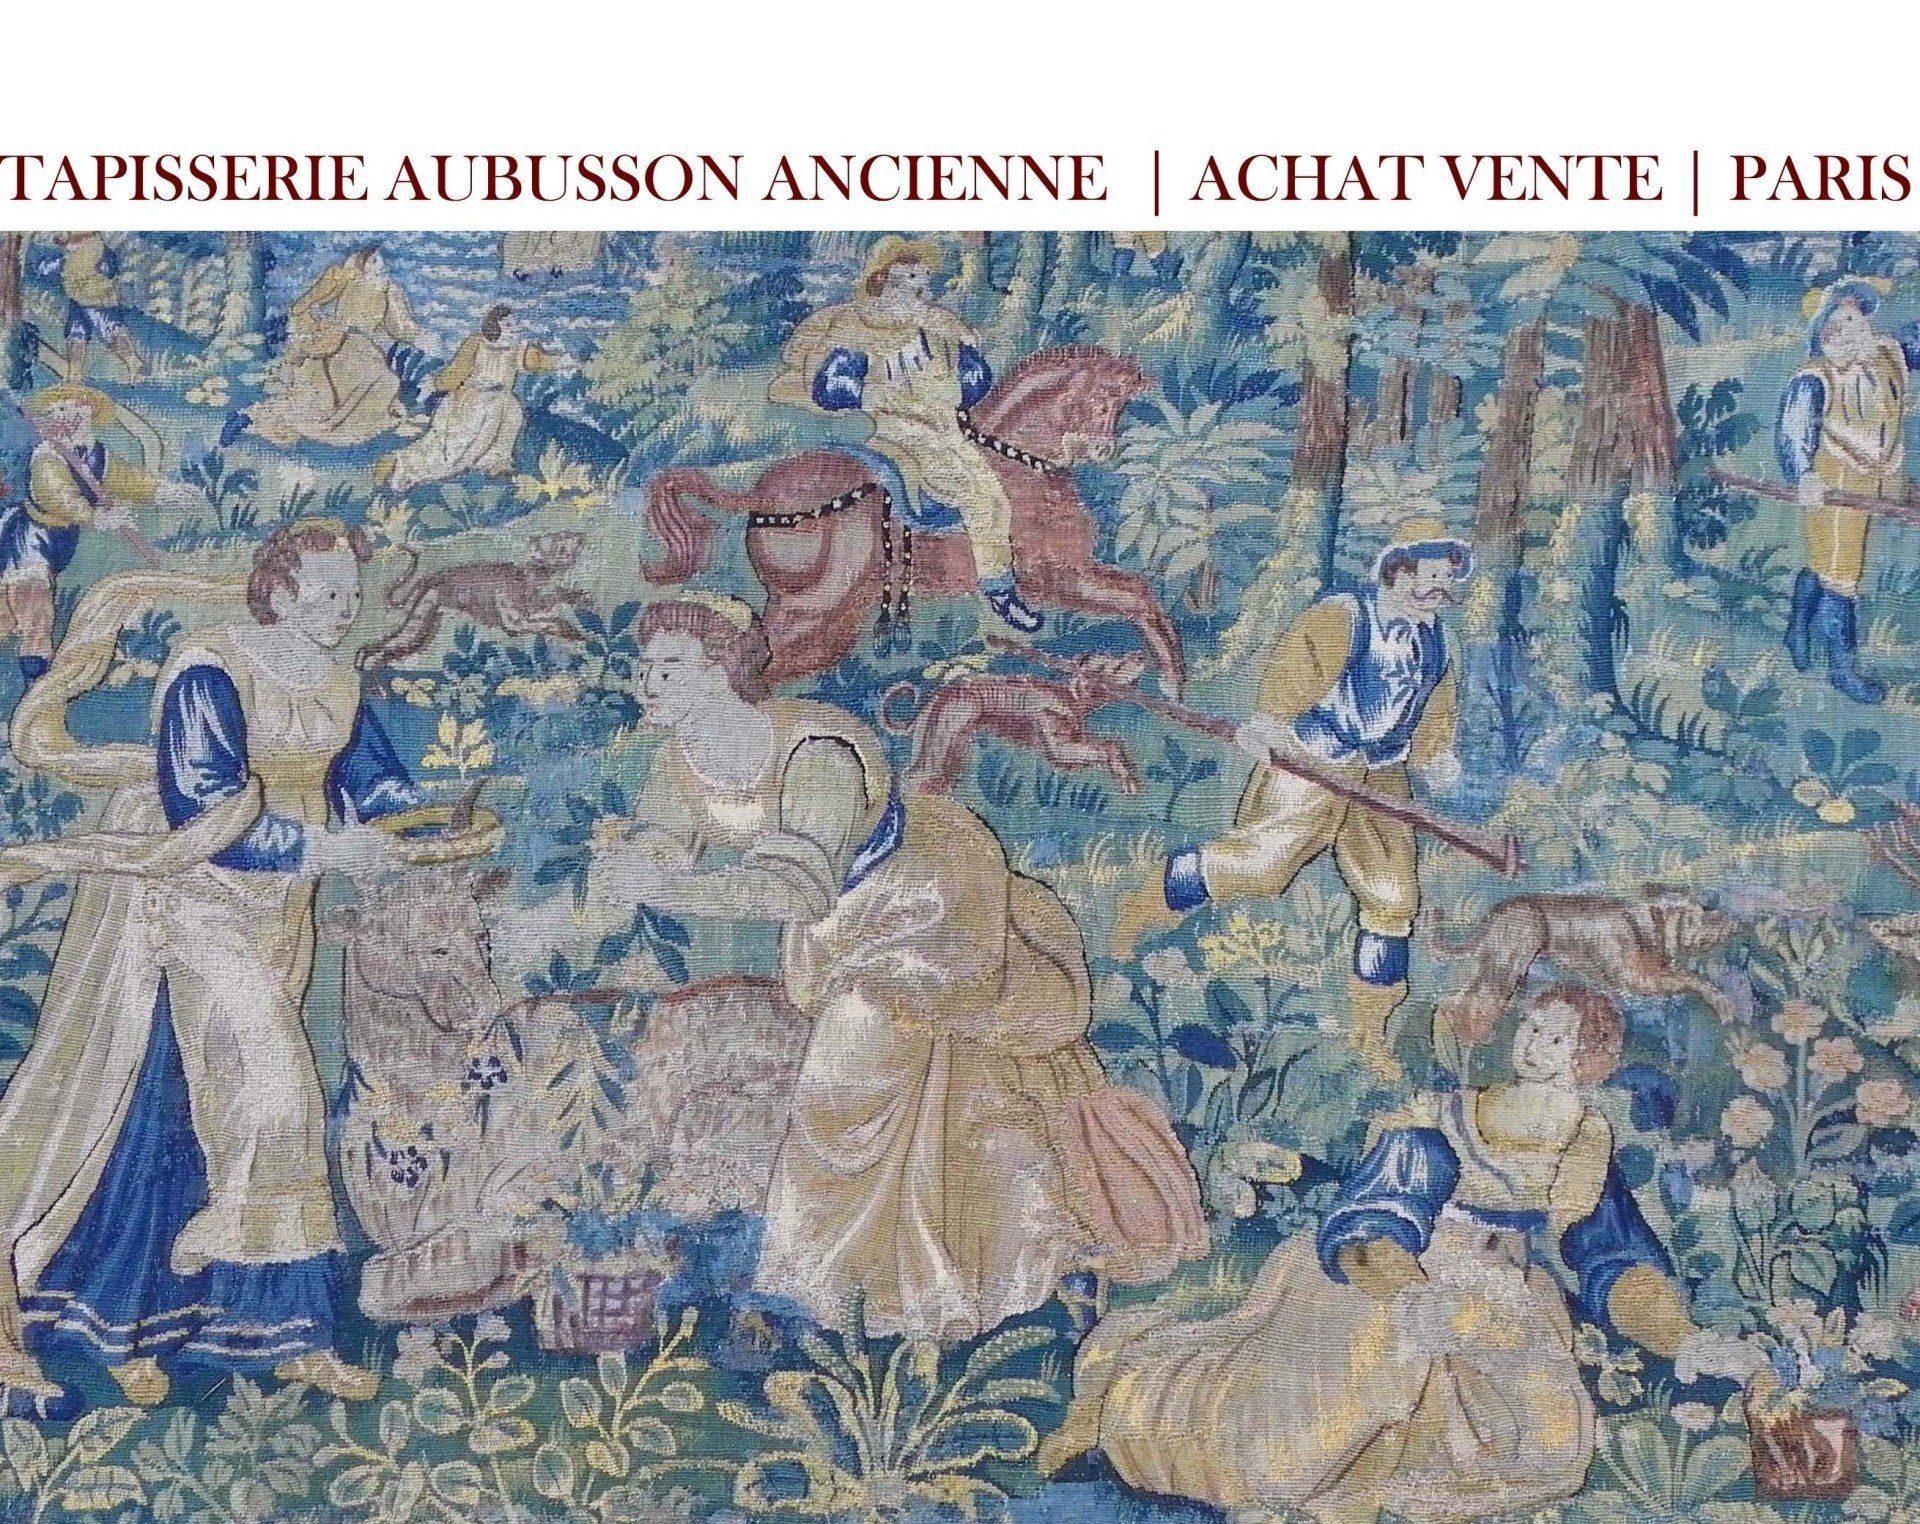 TAPISSERIE AUBUSSON ANCIENNE | ACHAT VENTE | PARIS